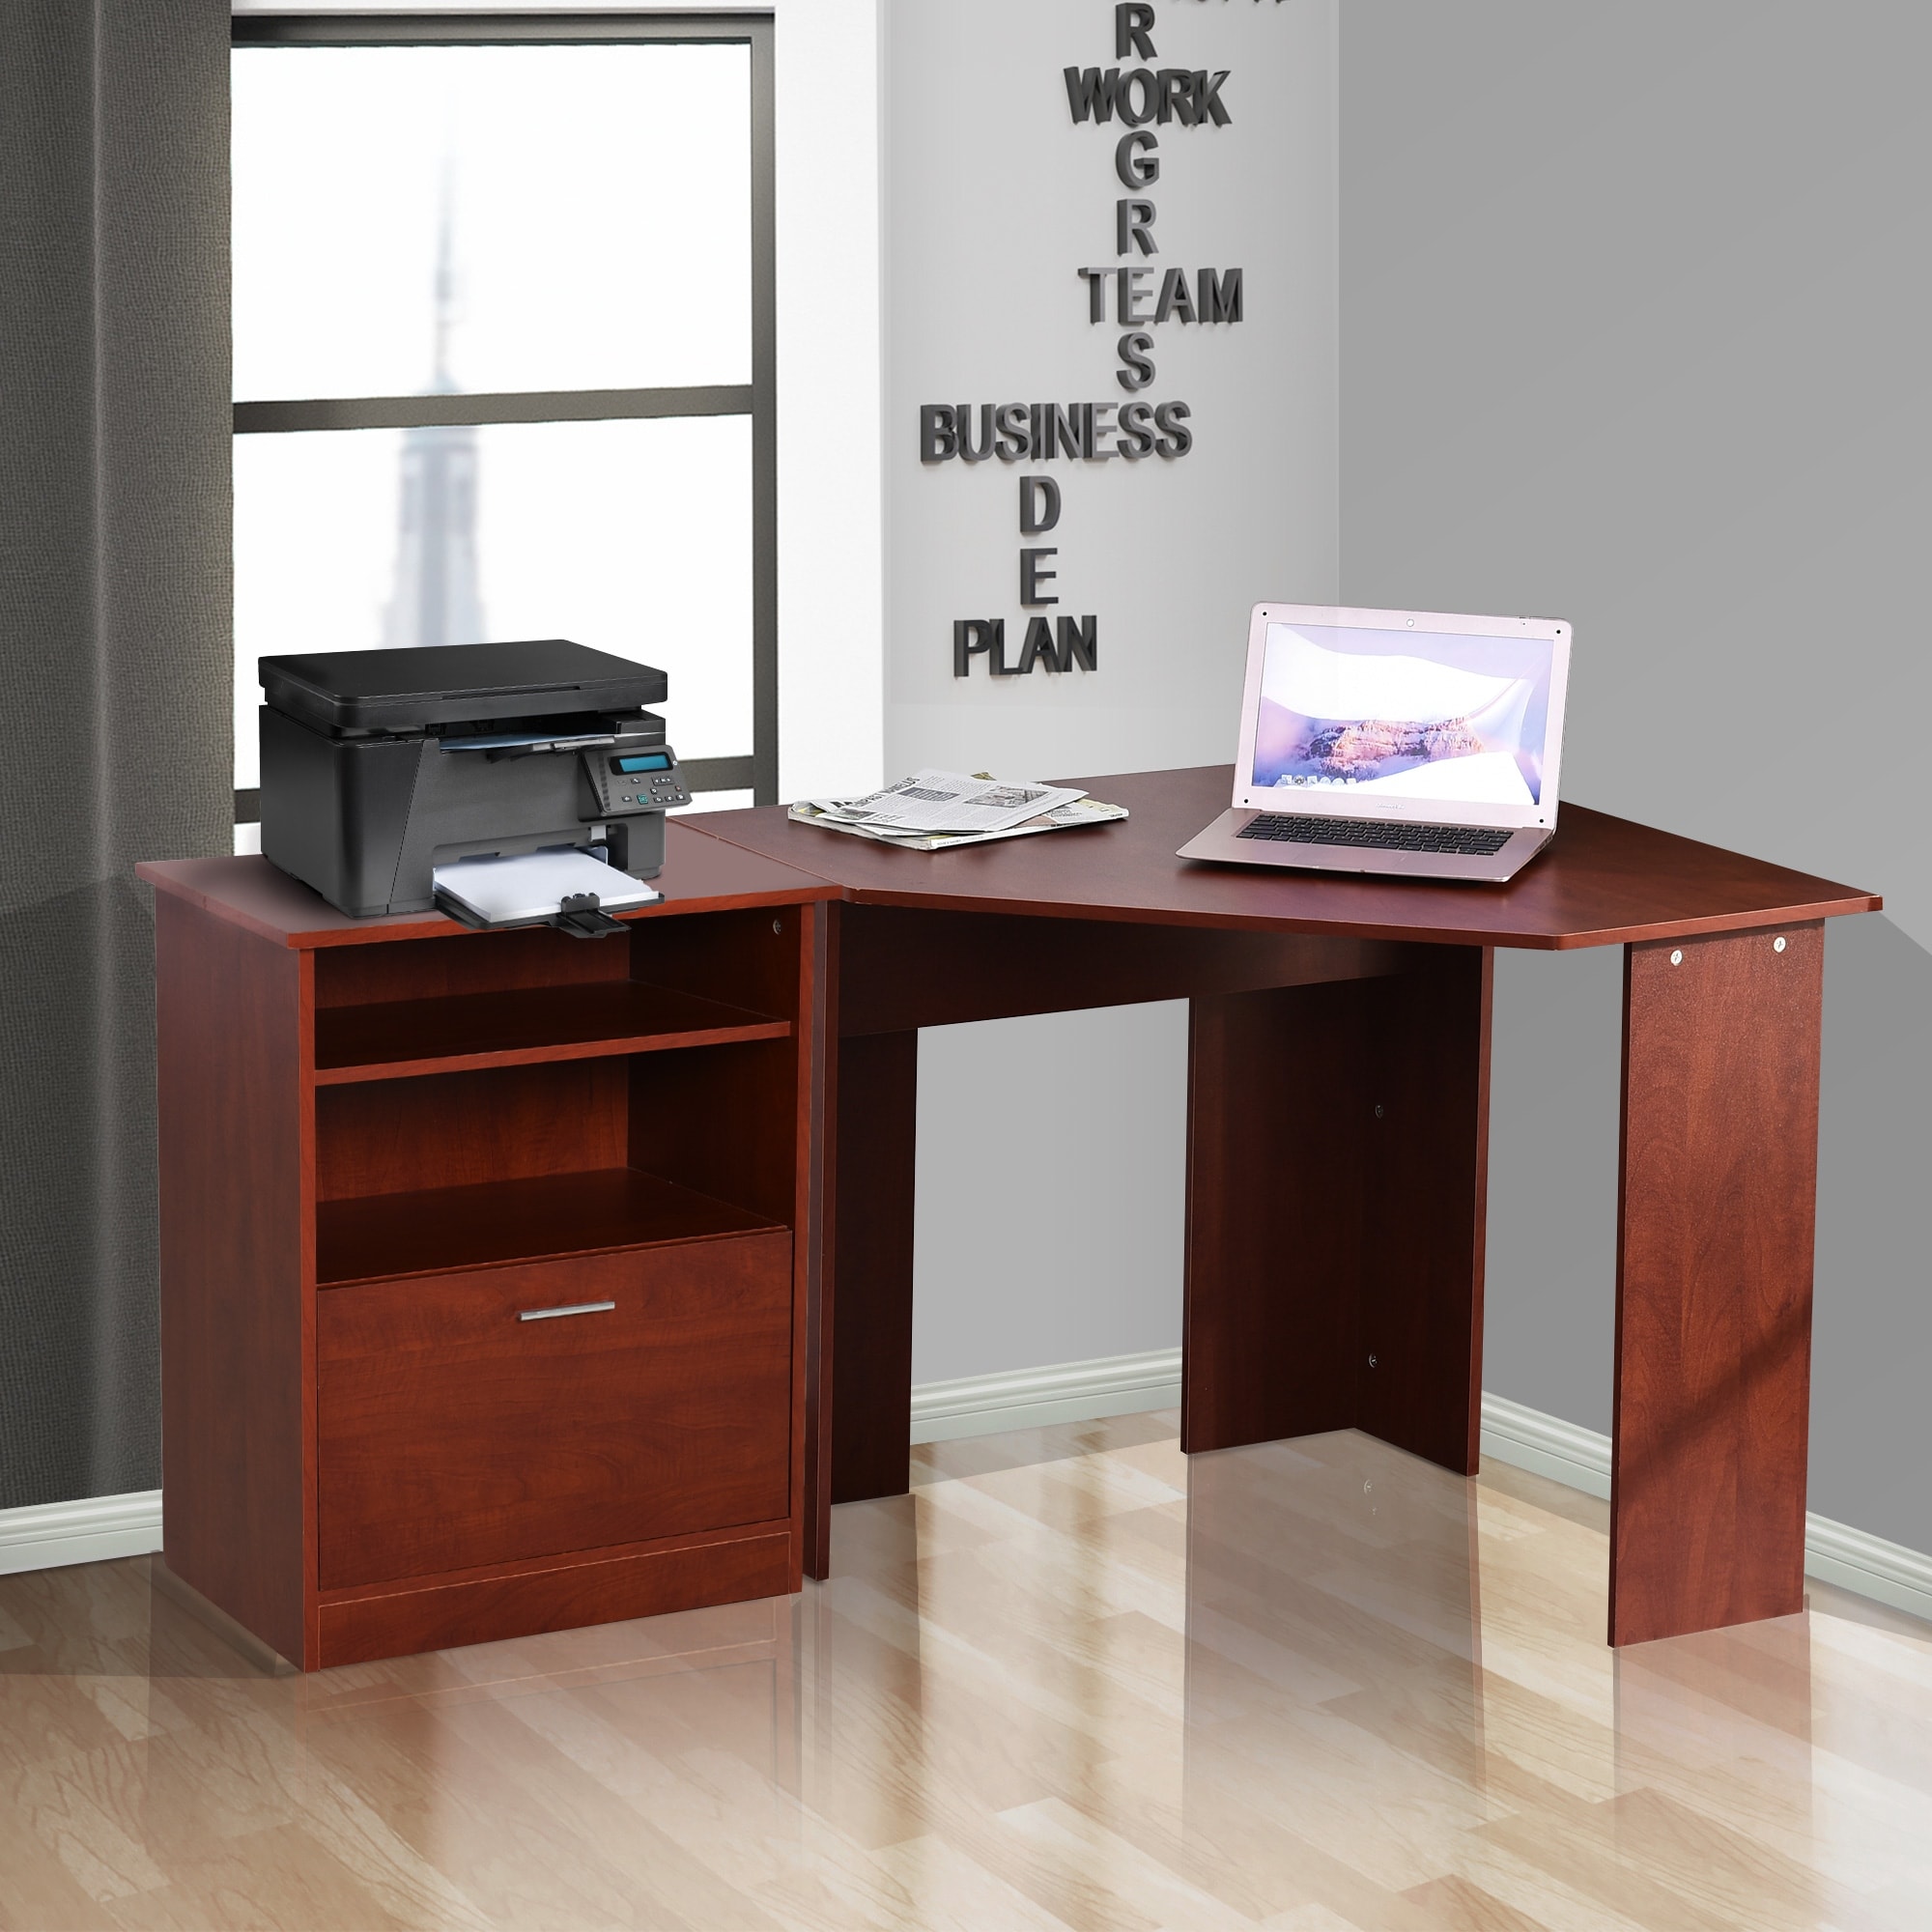 HOMCOM Computer Desk for Small Spaces, Study Writing Desk, Corner